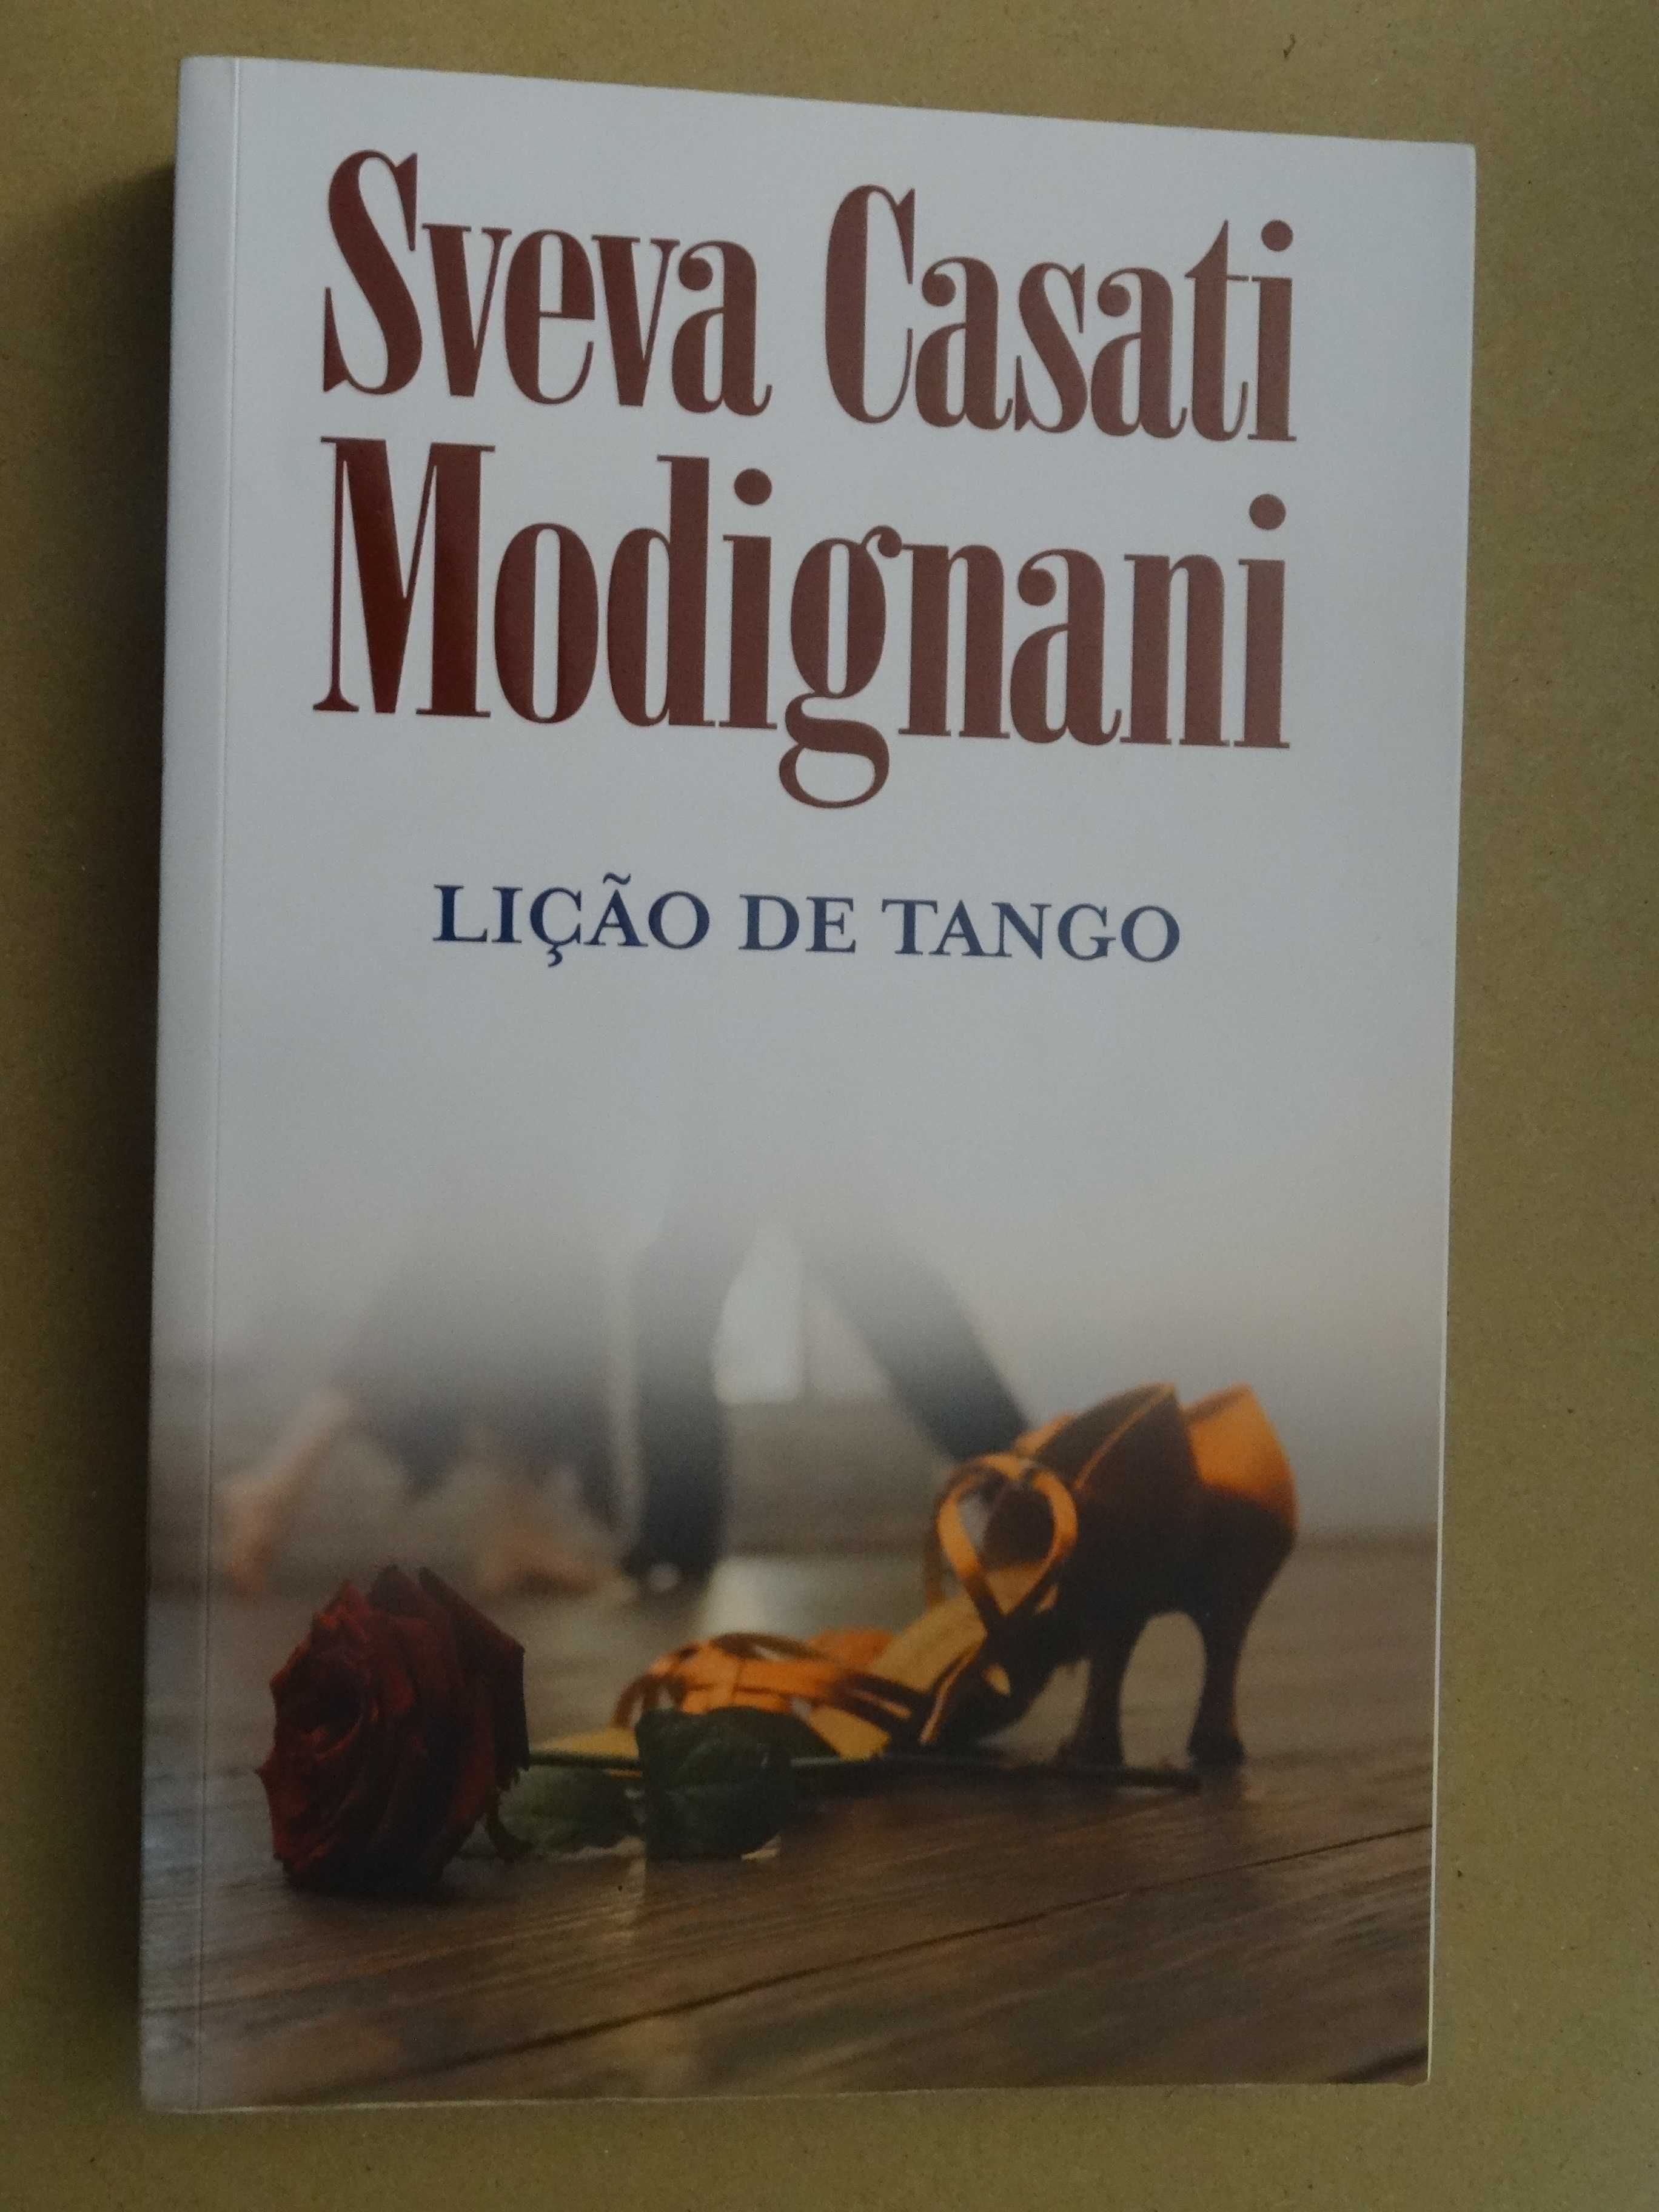 Lição de Tango de Sveva Casati Modignani - 1ª Edição